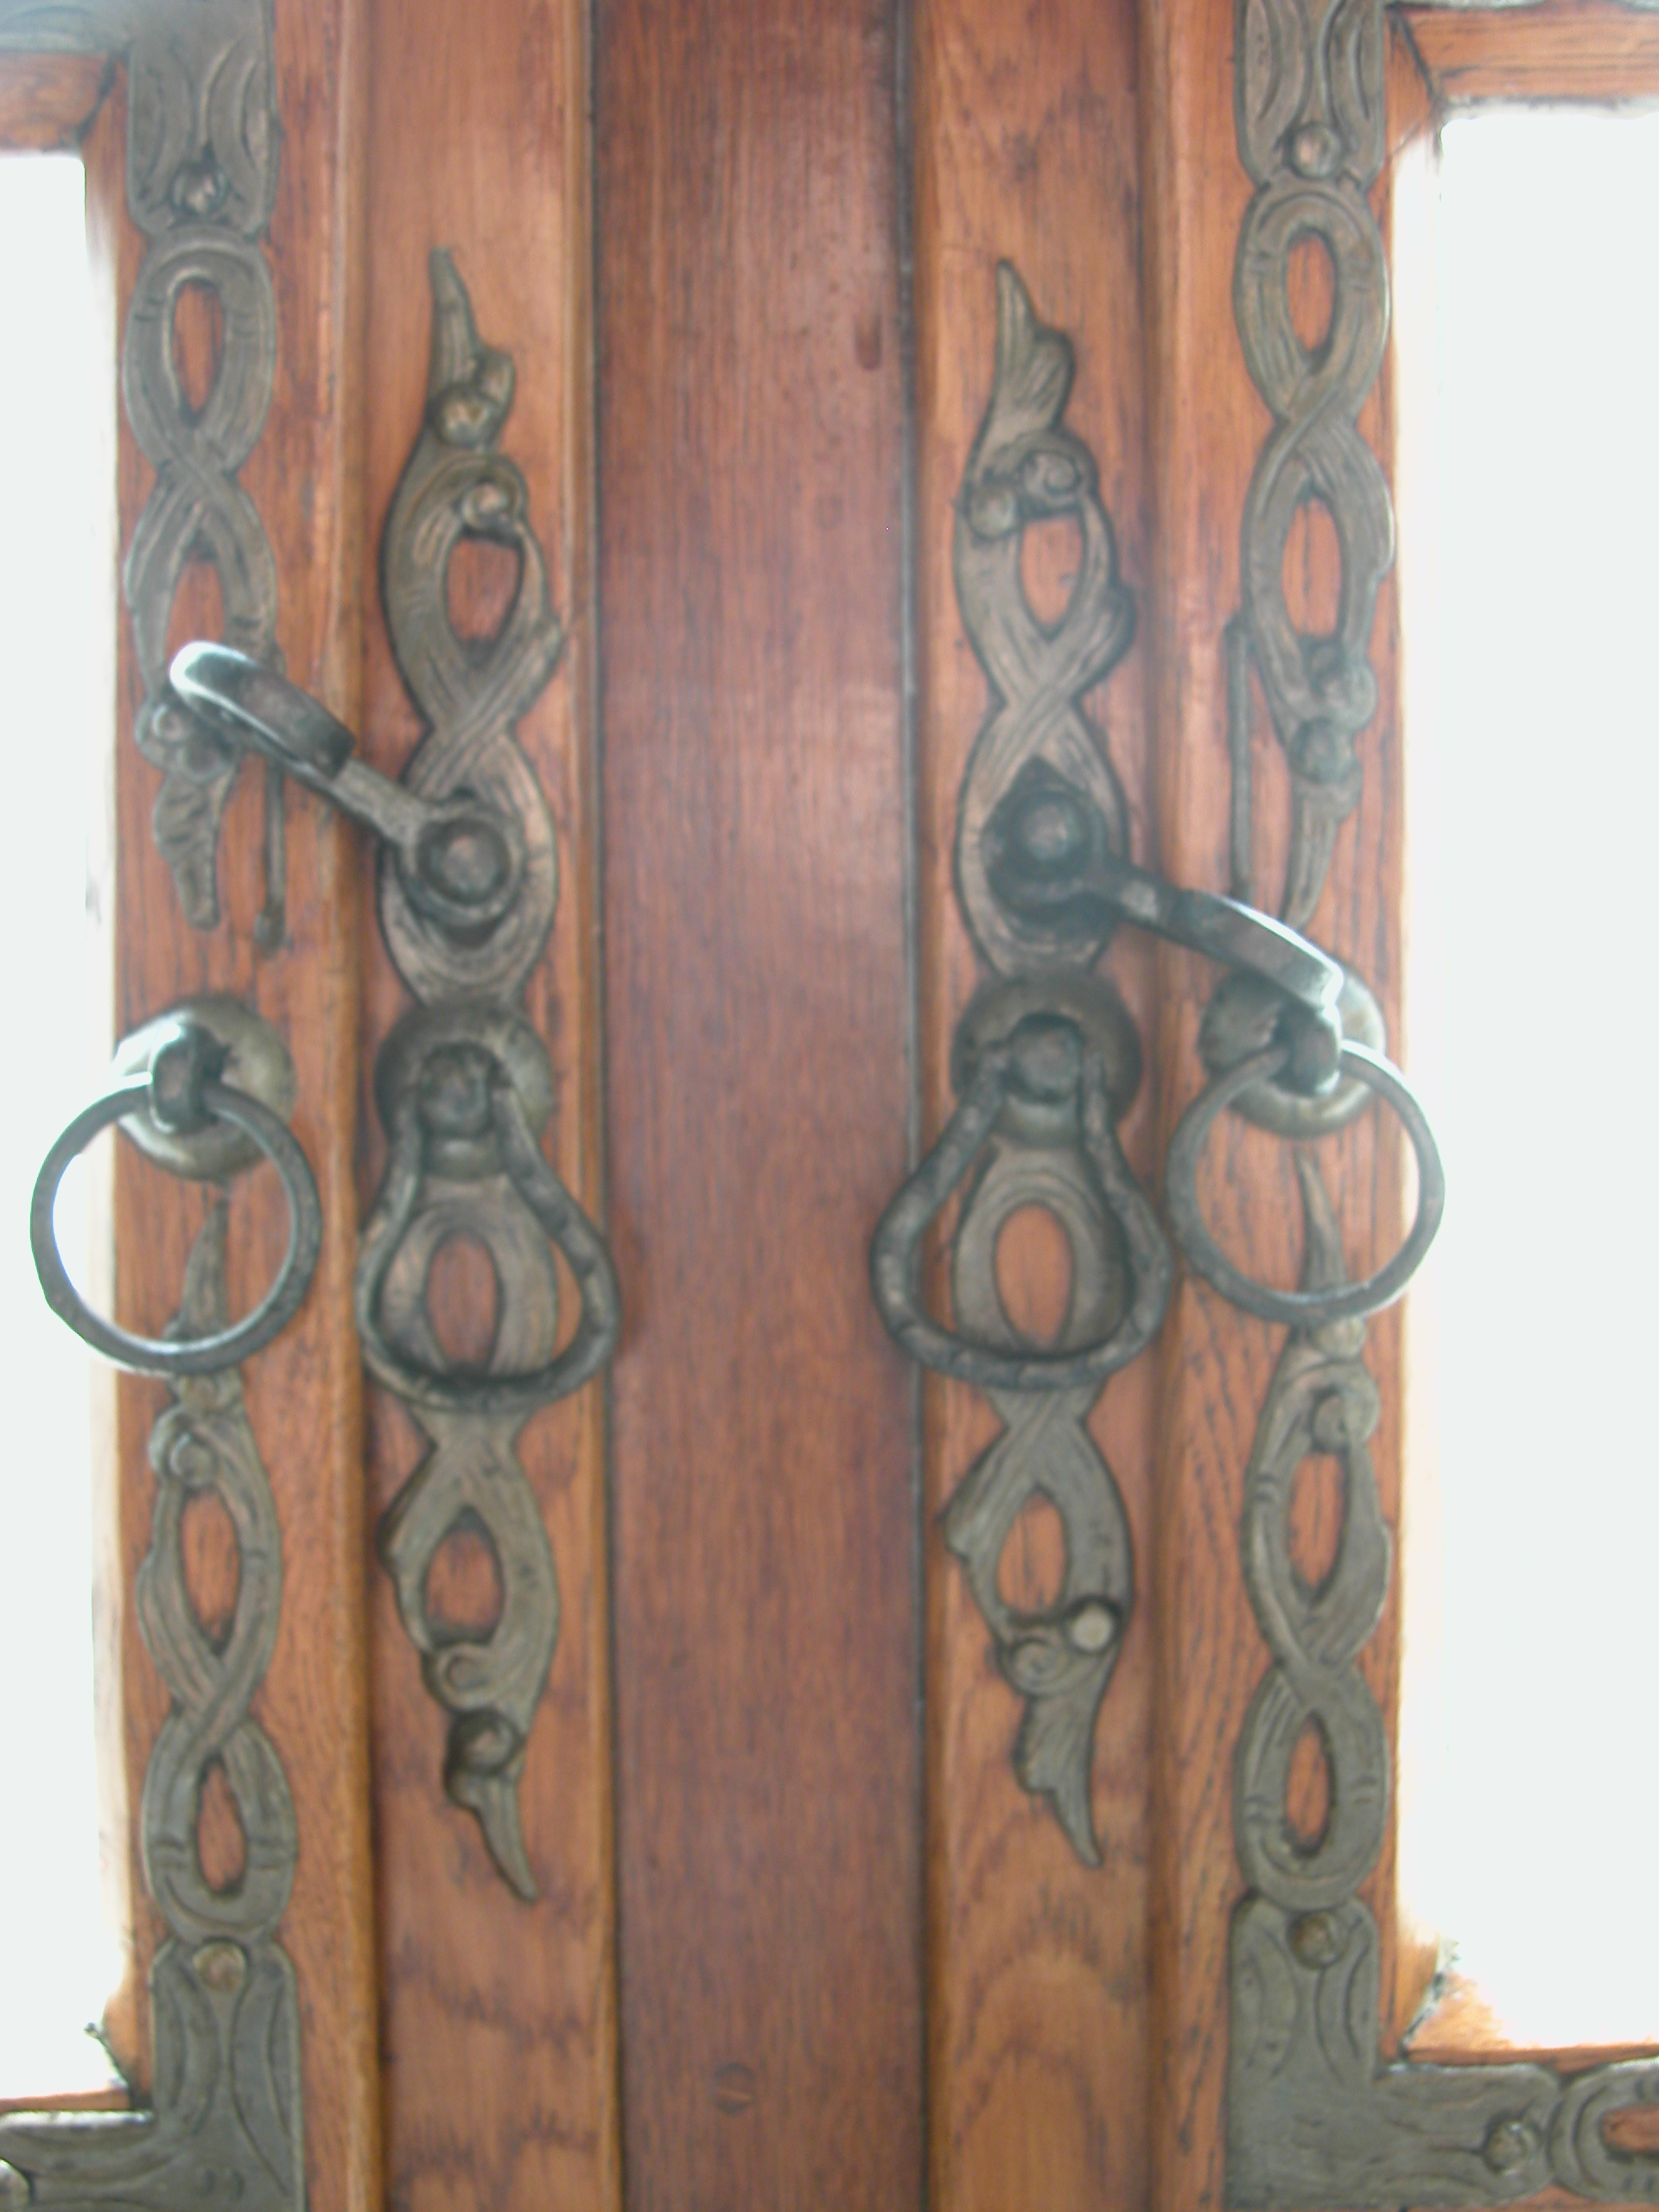 decorated steel door handles